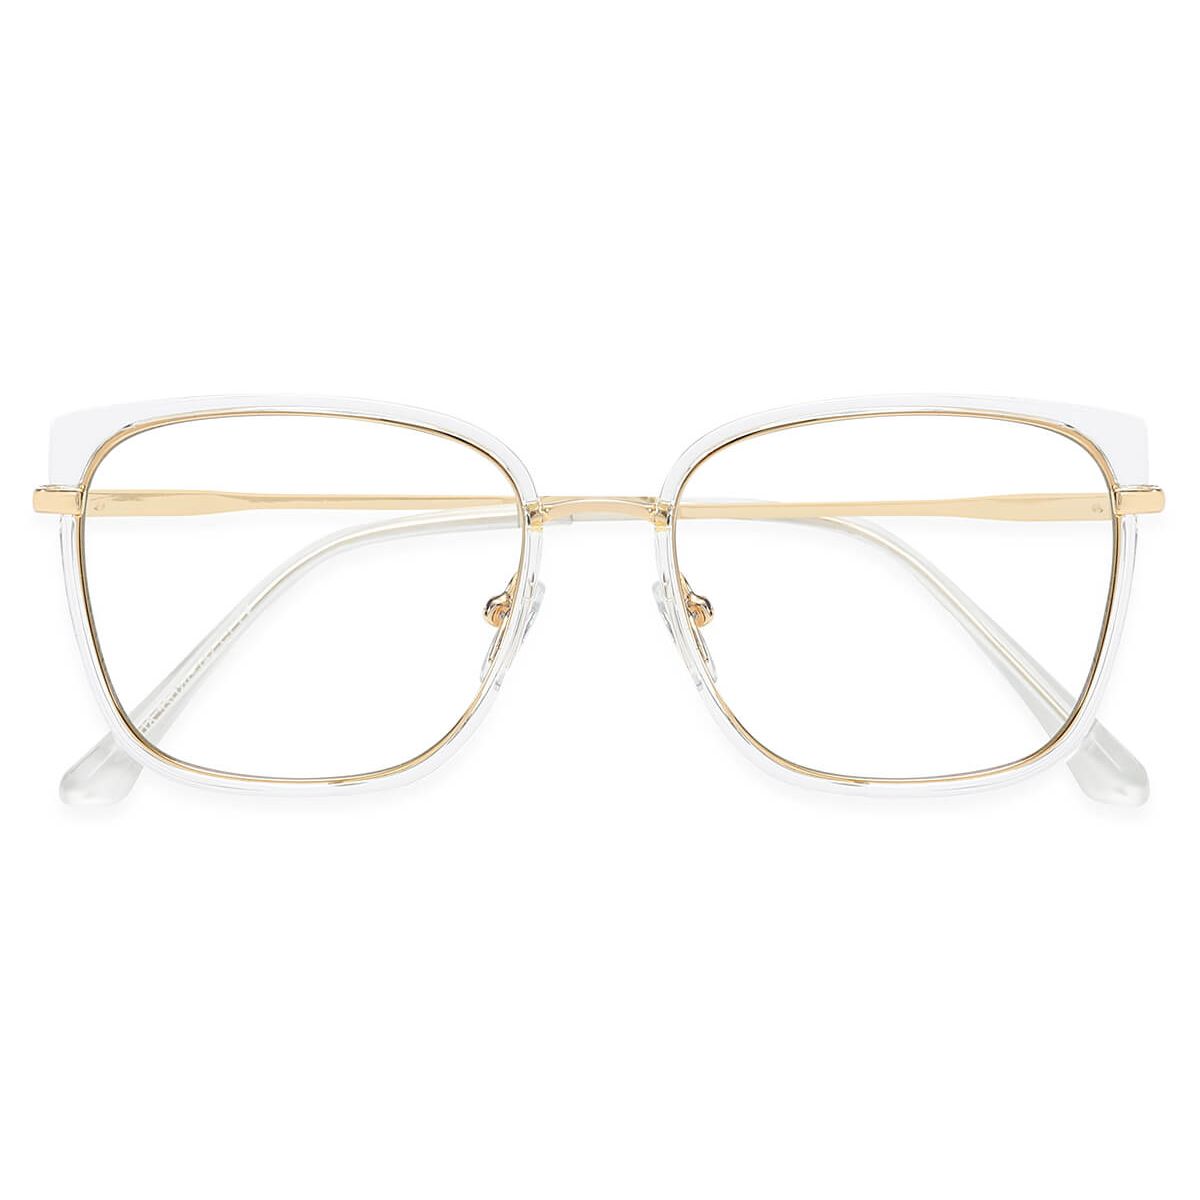 95618 Rectangle Clear Eyeglasses Frames | Leoptique